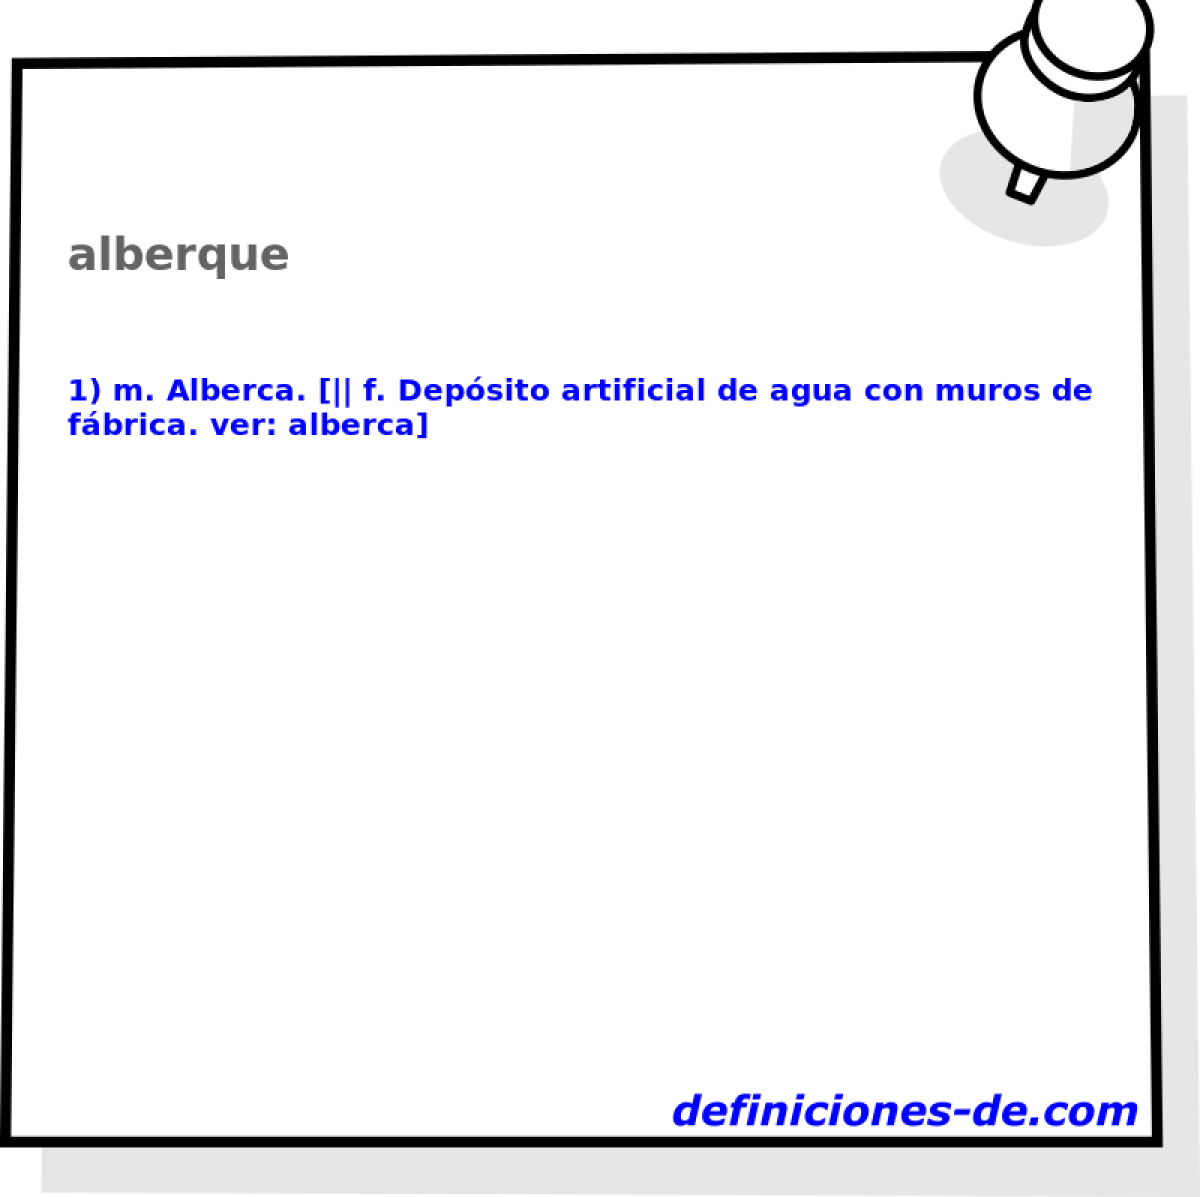 alberque 